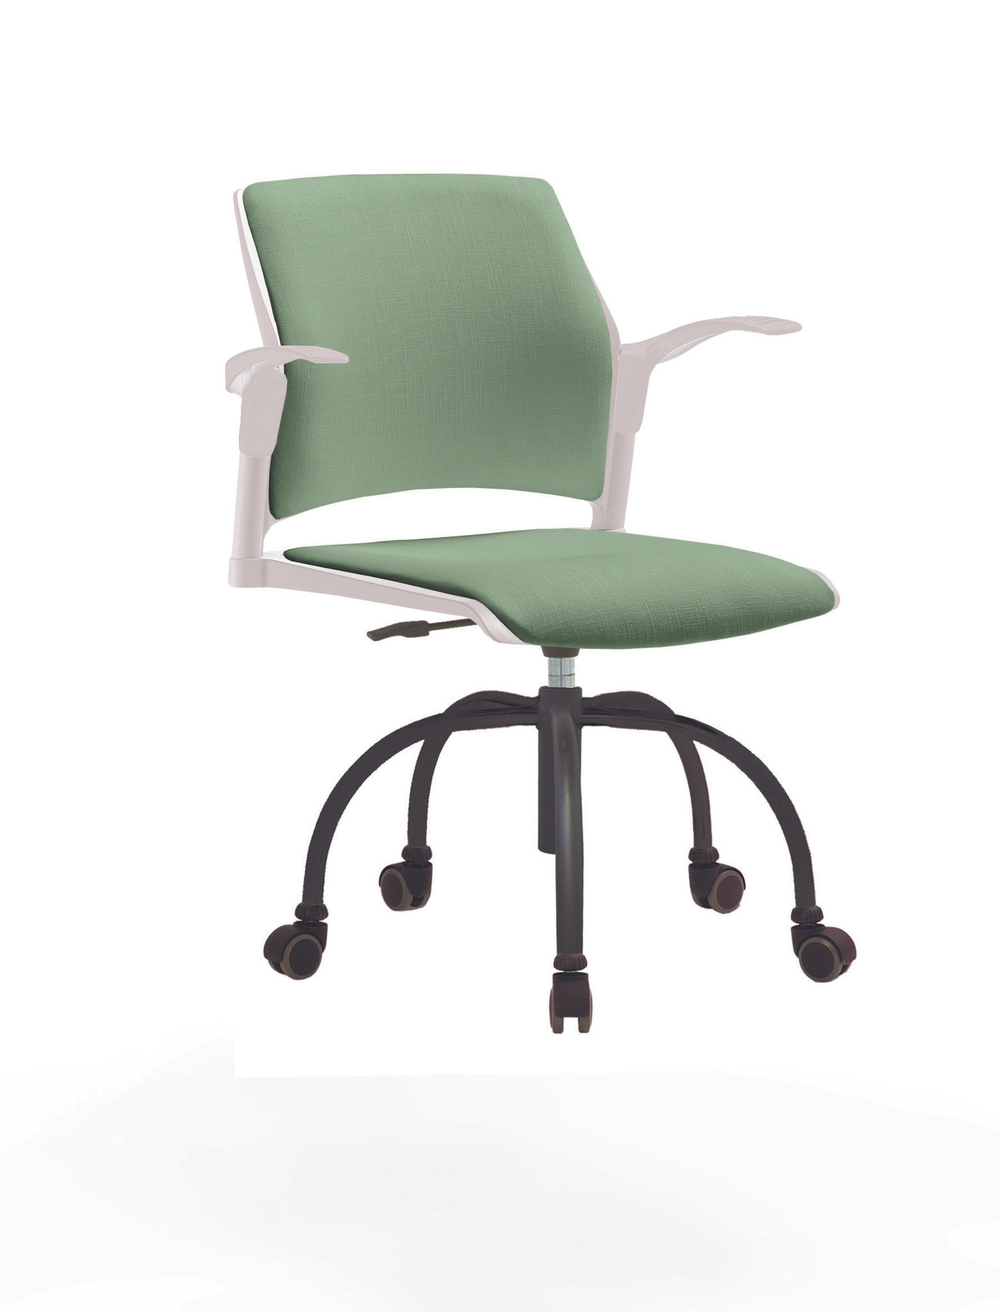 Кресло Rewind каркас черный, пластик белый, база паук краска черная, с открытыми подлокотниками, сиденье и спинка бледно-зеленые